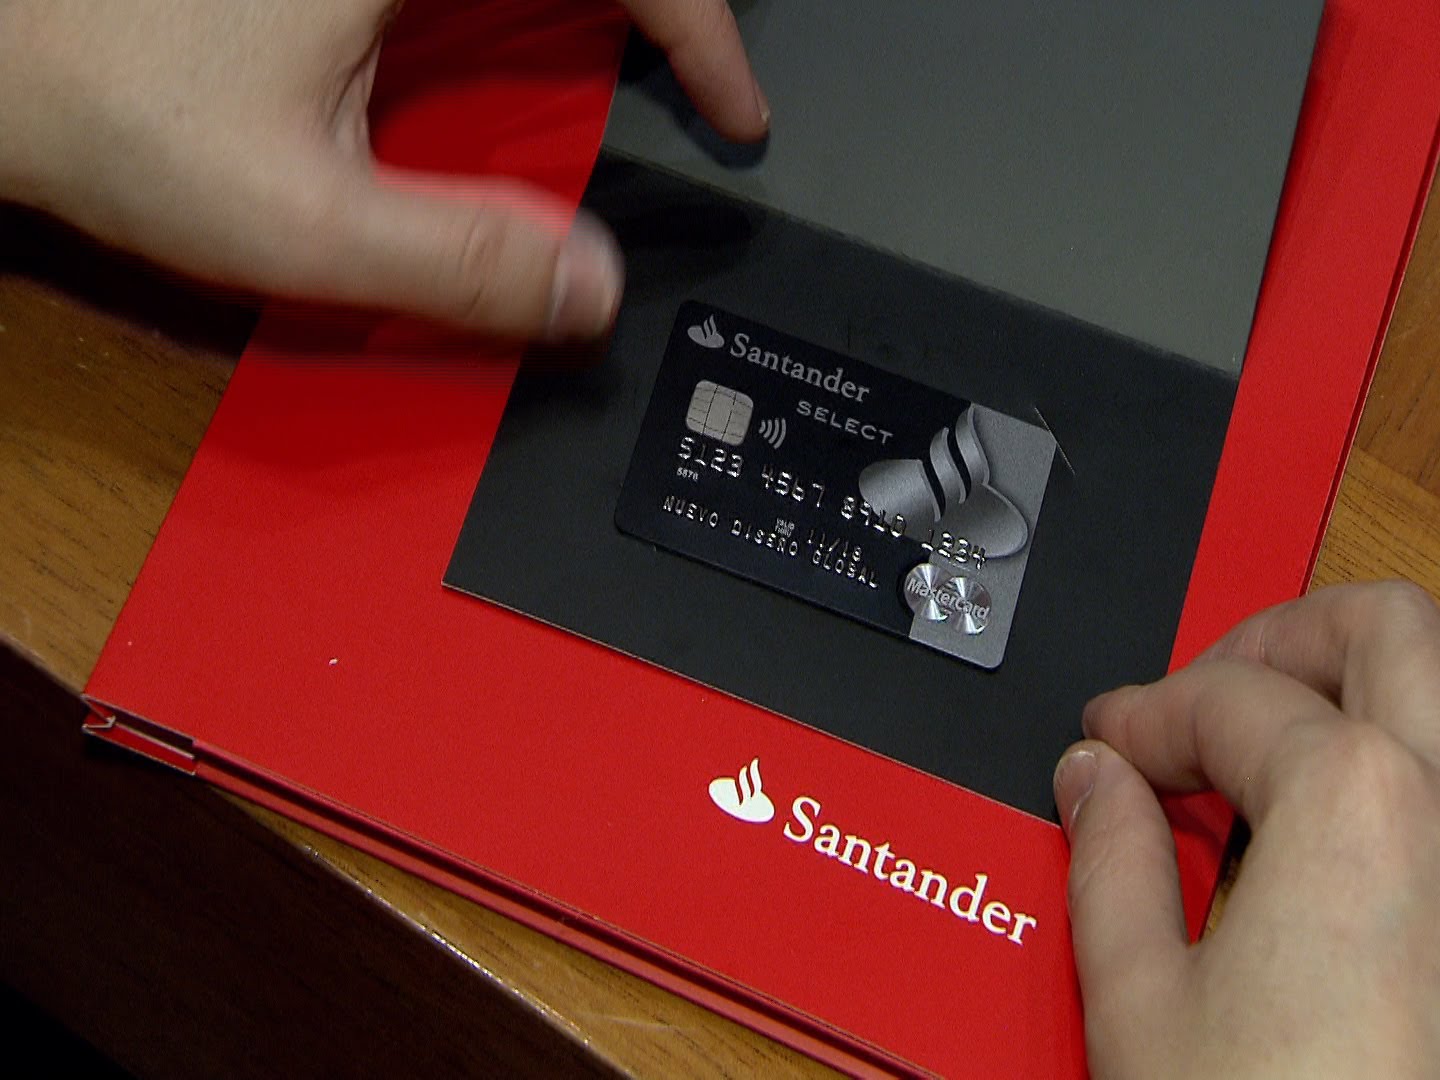 El banco de Santander descuida las tarjetas de sus clientes - Diario16